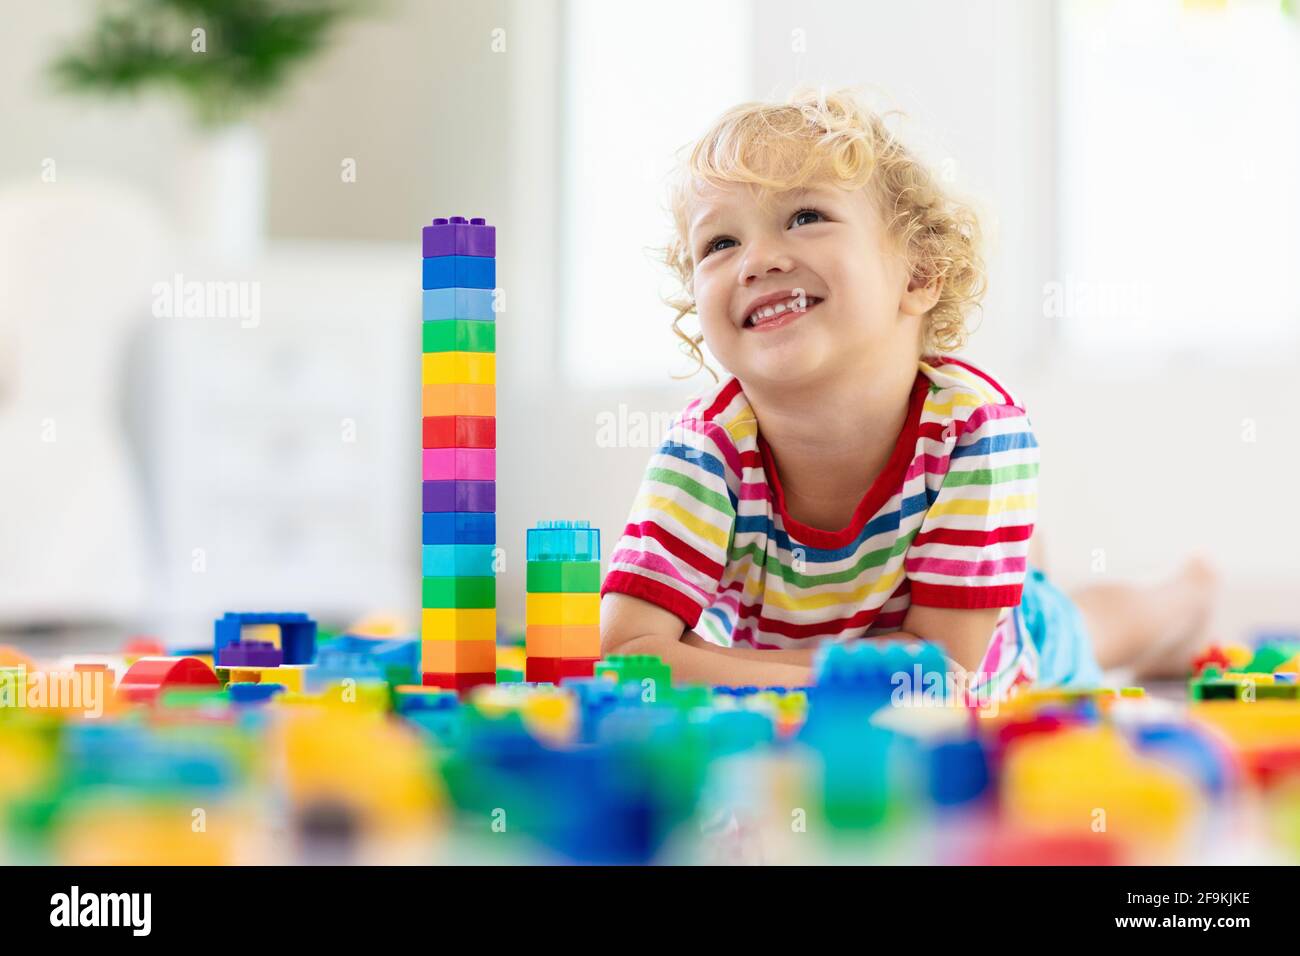 Kind spielt mit bunten Spielzeugblöcken. Kleiner Junge, der zu Hause oder in der Kindertagesstätte einen Turm baut. Pädagogisches Spielzeug für kleine Kinder. Stockfoto